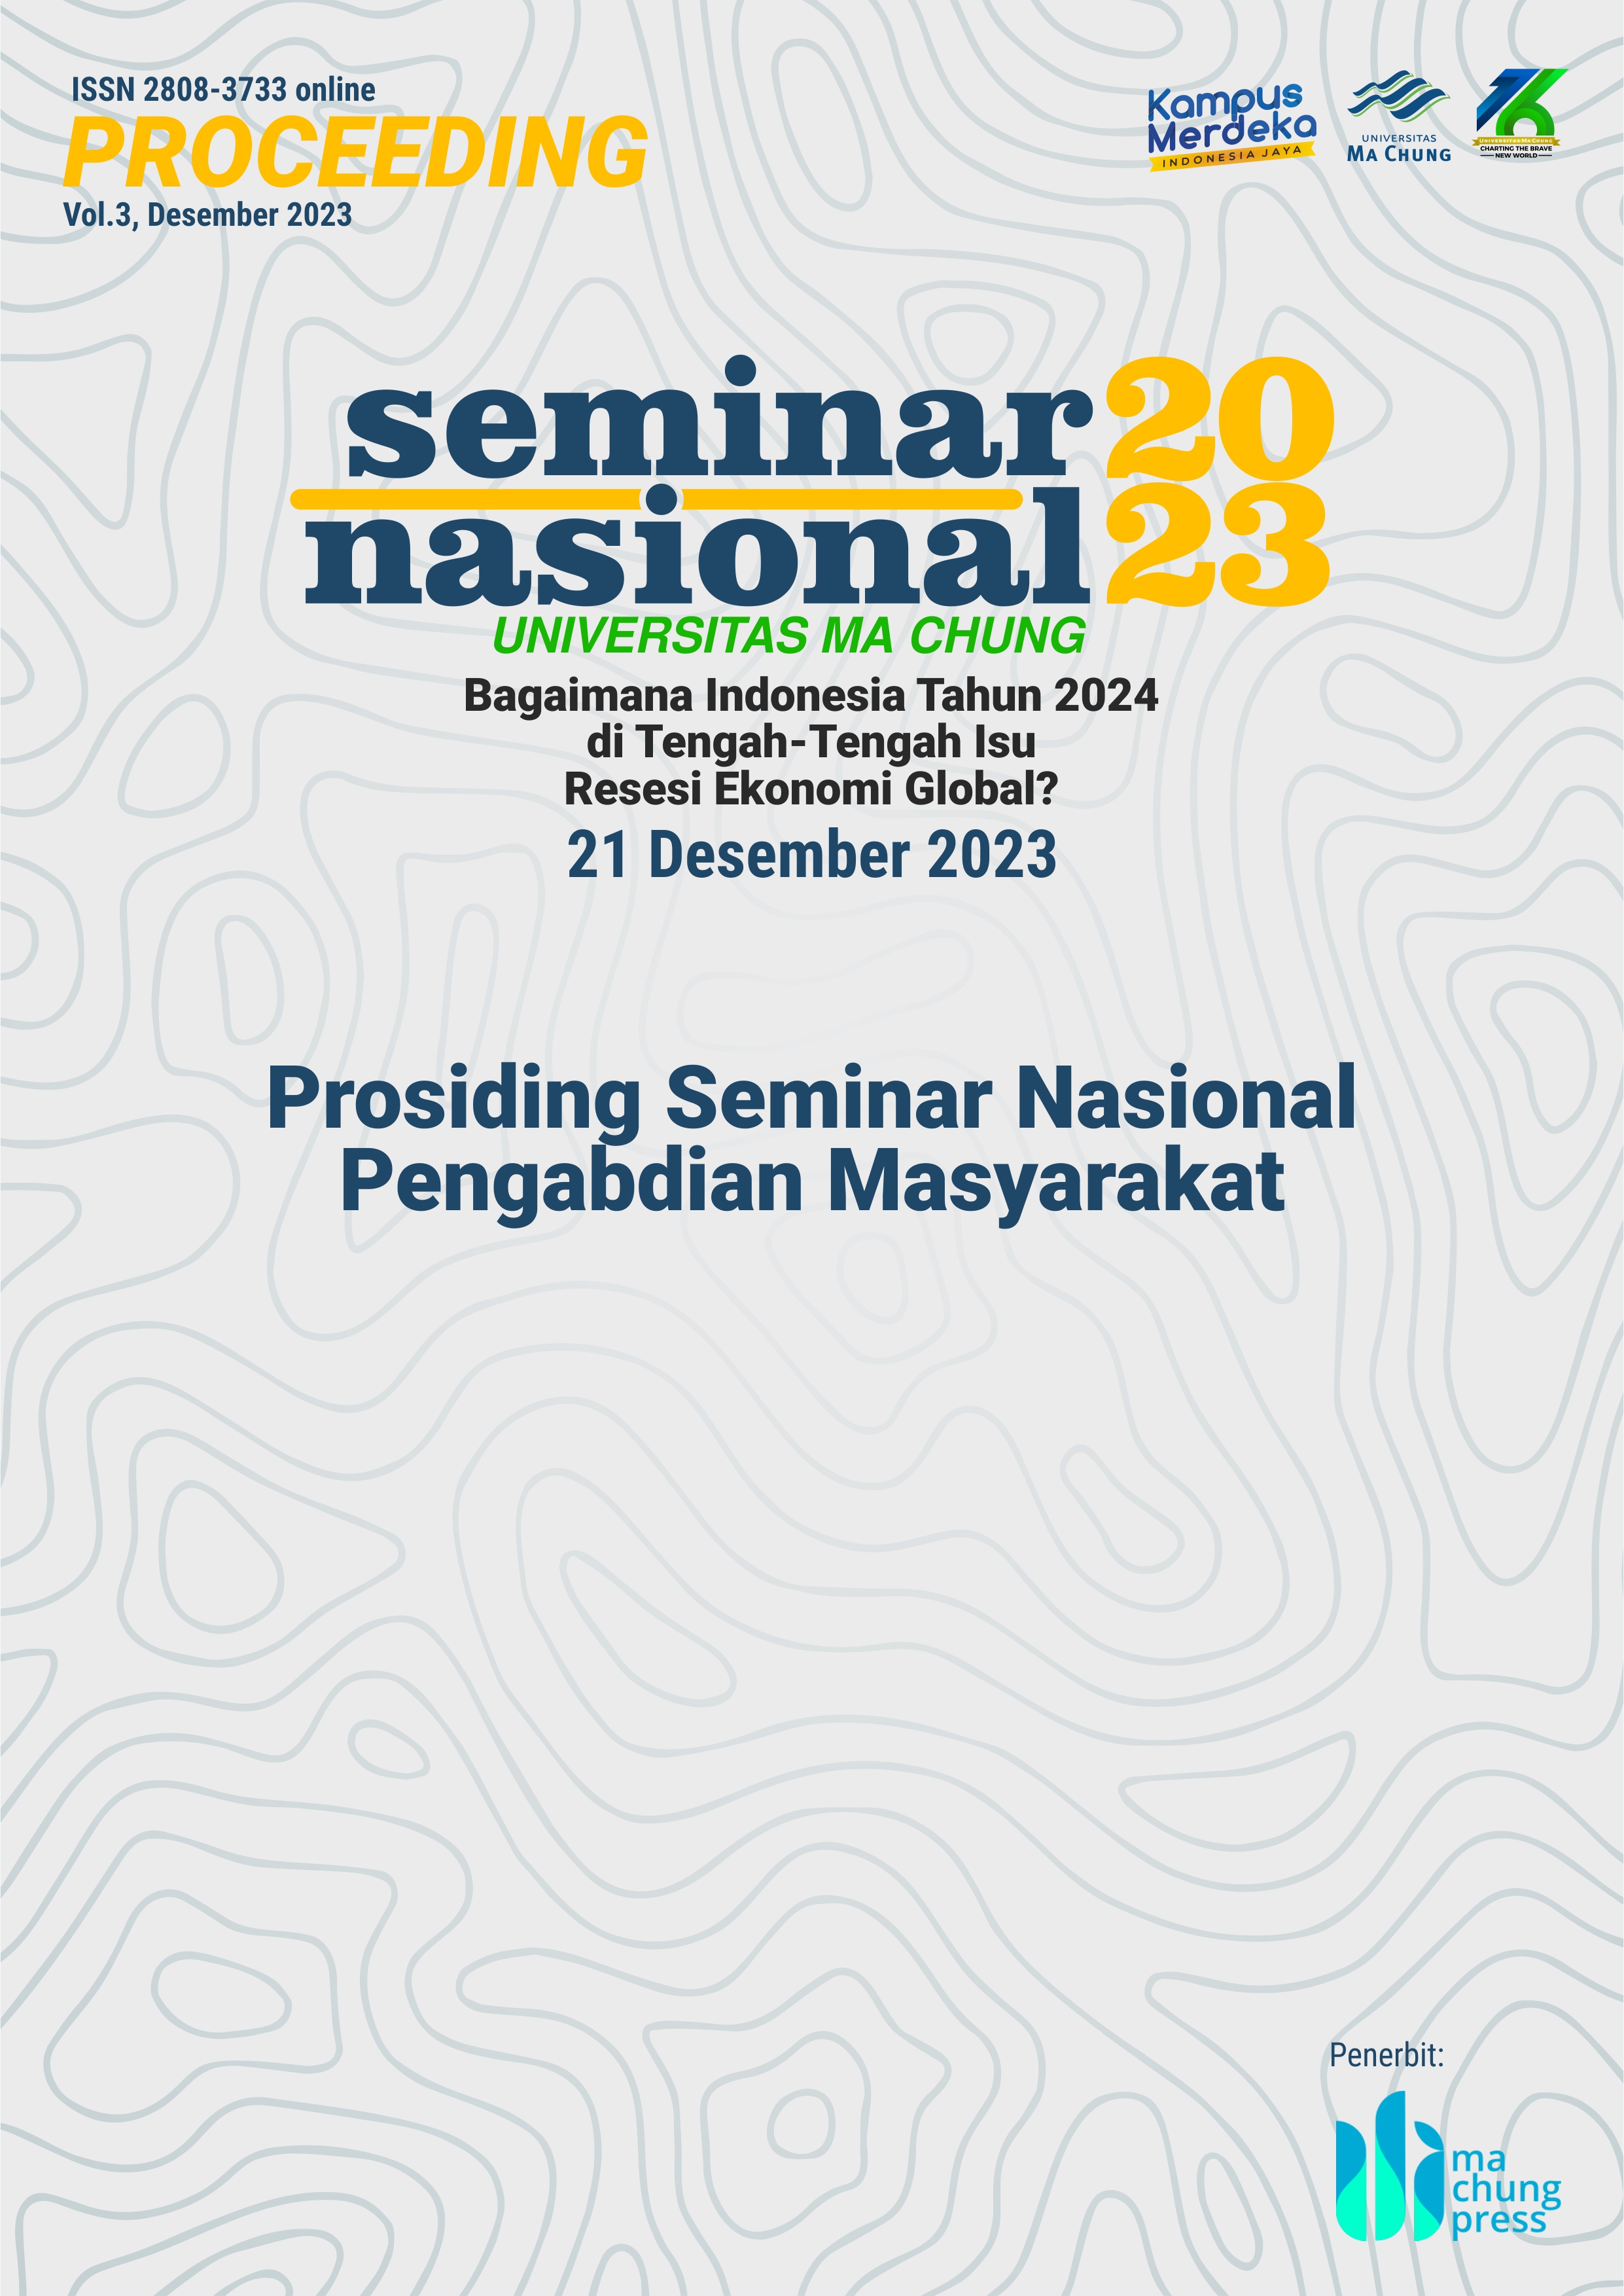 					View Vol. 3 (2023): Seminar Nasional Pengabdian Masyarakat Ma Chung 2023: Bagaimana Indonesia Tahun 2024 di Tengah-Tengah Isu Resesi Ekonomi Global?
				